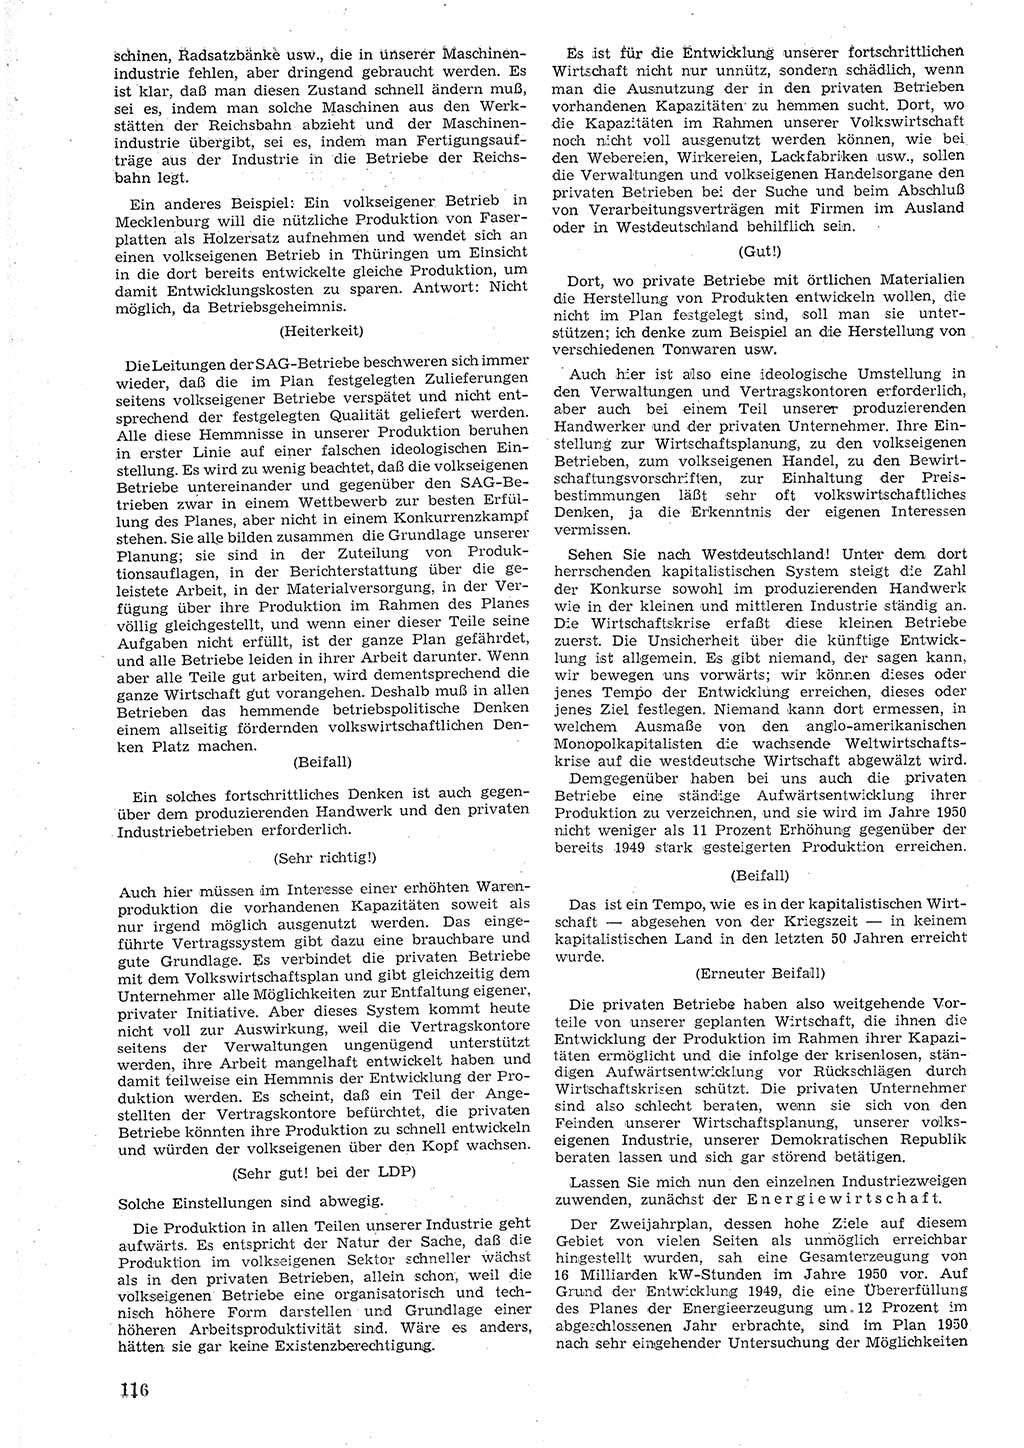 Provisorische Volkskammer (VK) der Deutschen Demokratischen Republik (DDR) 1949-1950, Dokument 128 (Prov. VK DDR 1949-1950, Dok. 128)